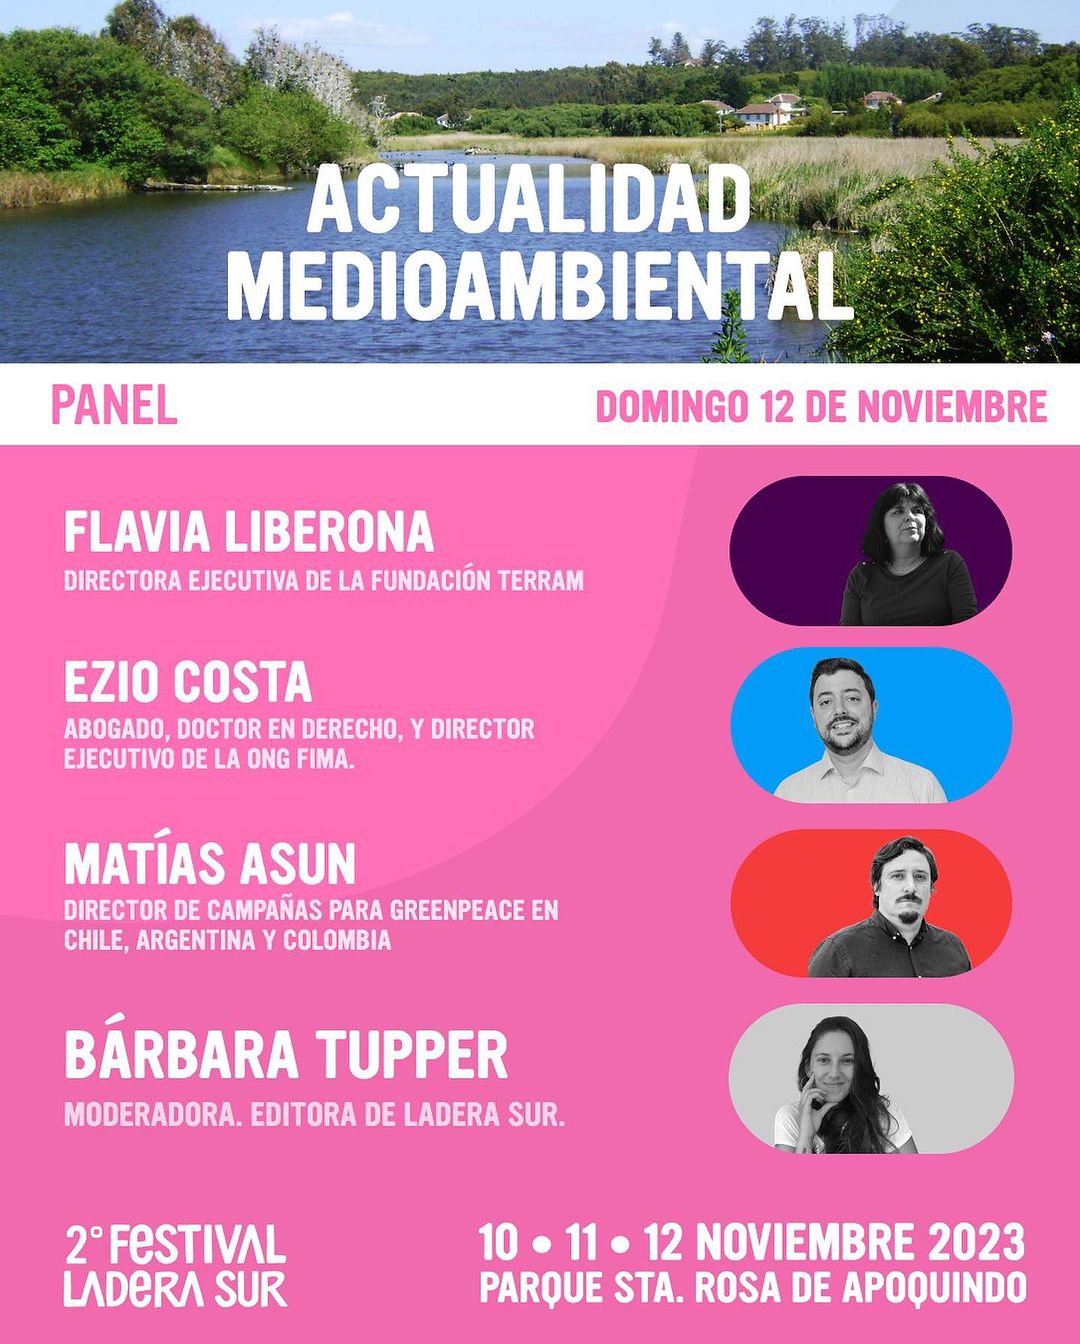 Festival Ladera Sur 2023: Panel de “Actualidad Medioambiental” este domingo 12 de noviembre